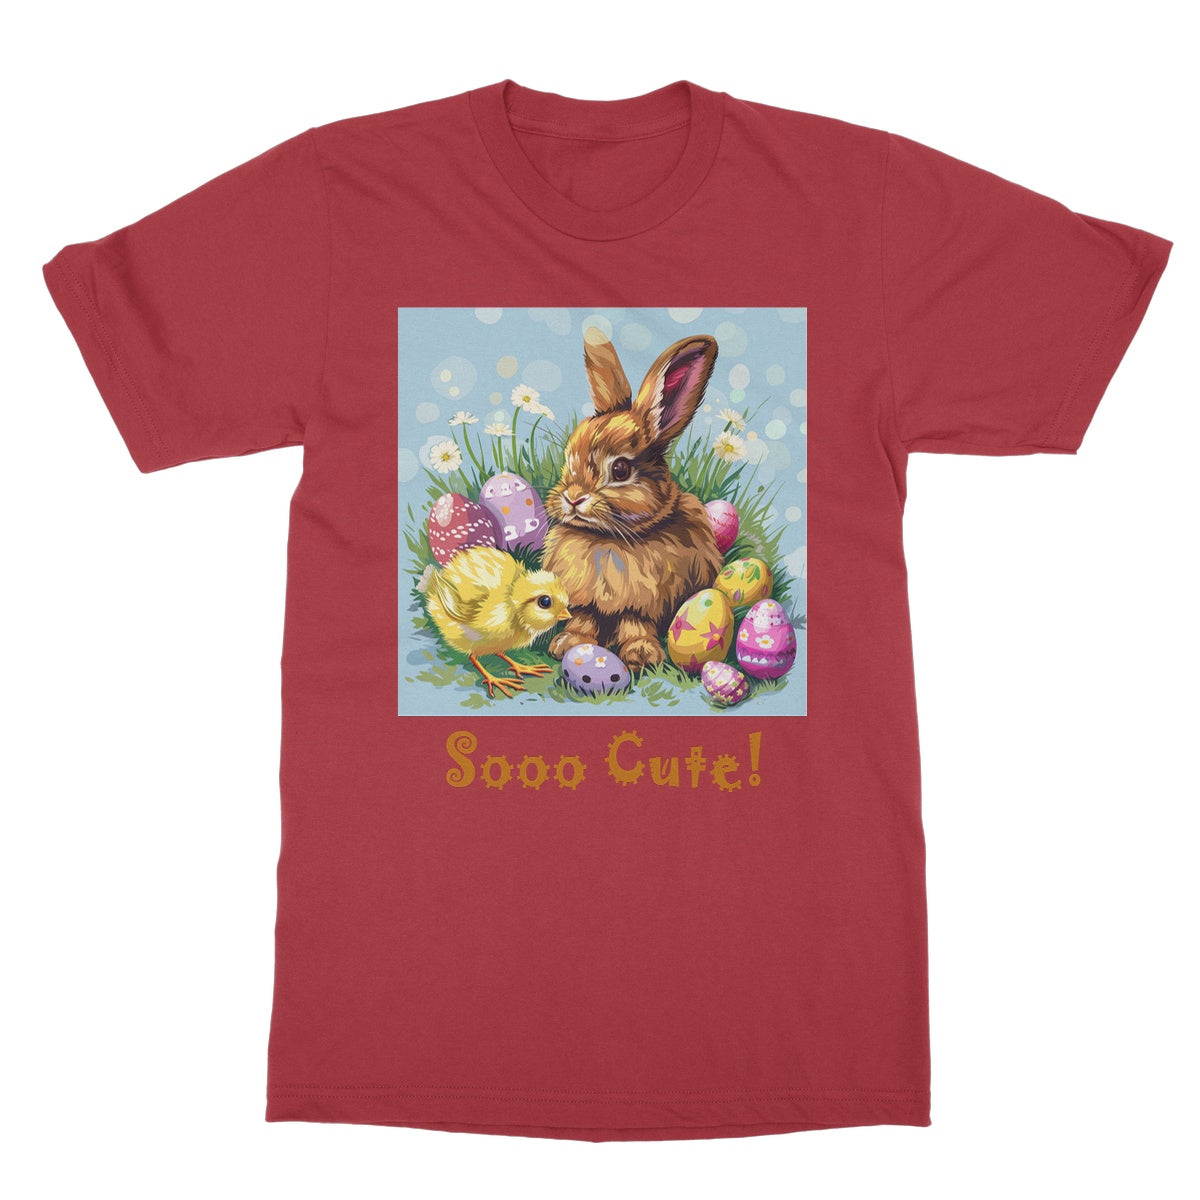 Sooo Cute! Grownups' T-Shirt